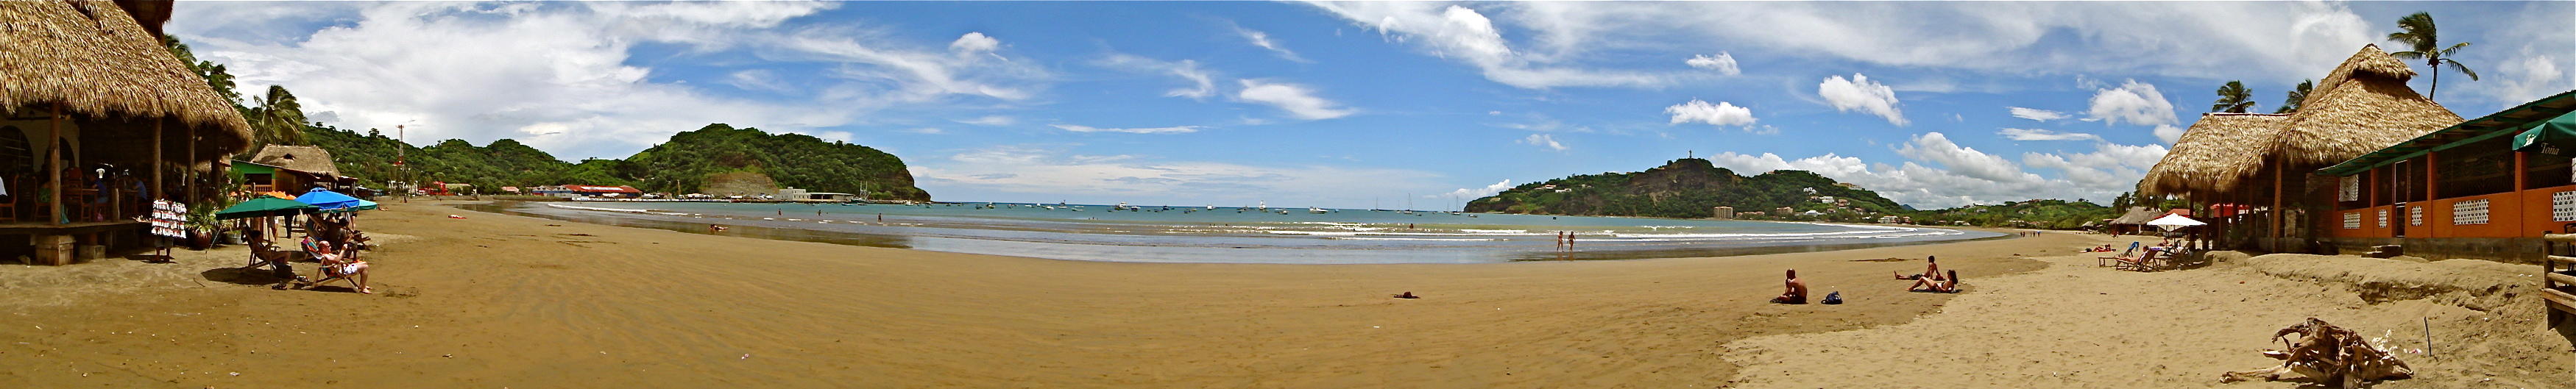 Beach in San Juan del Sur, Nicaragua